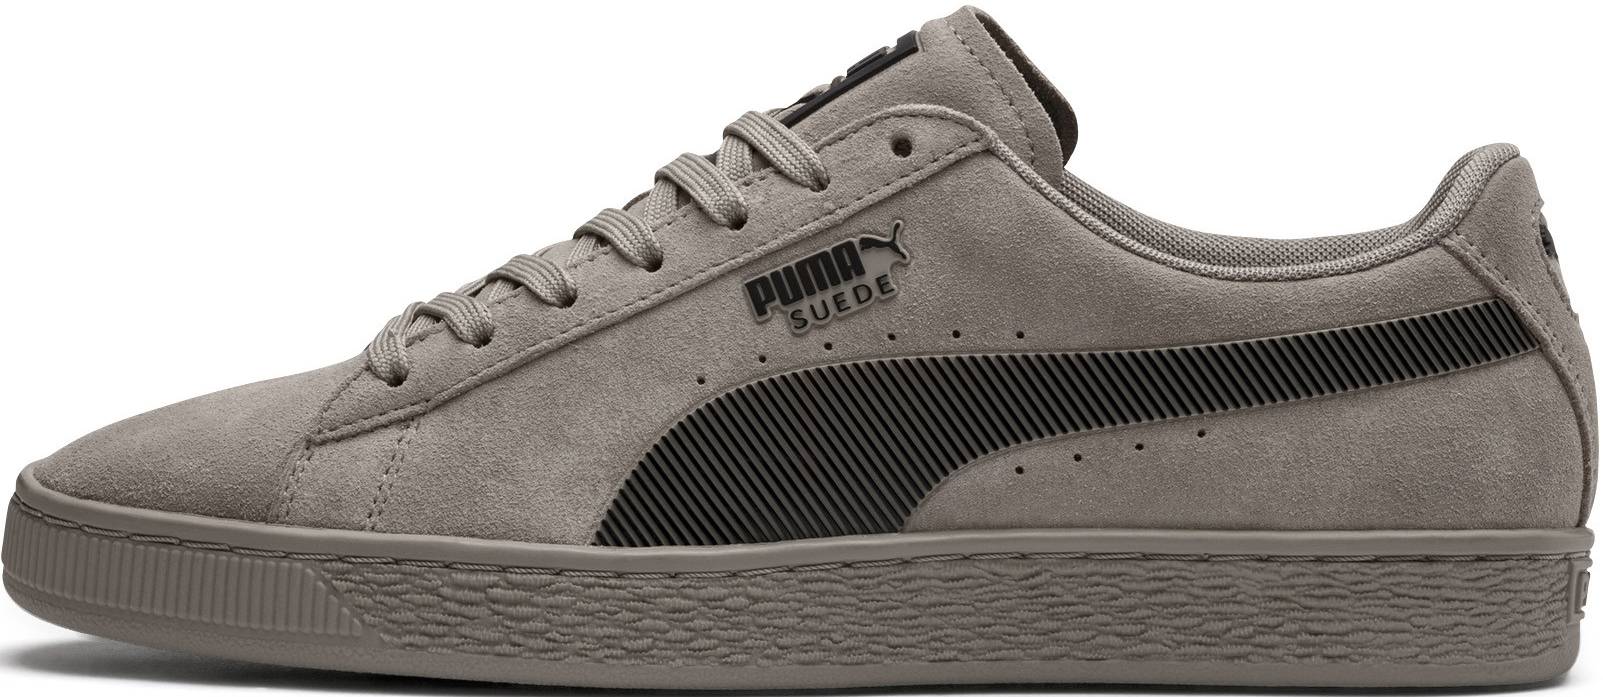 puma gray suede shoes